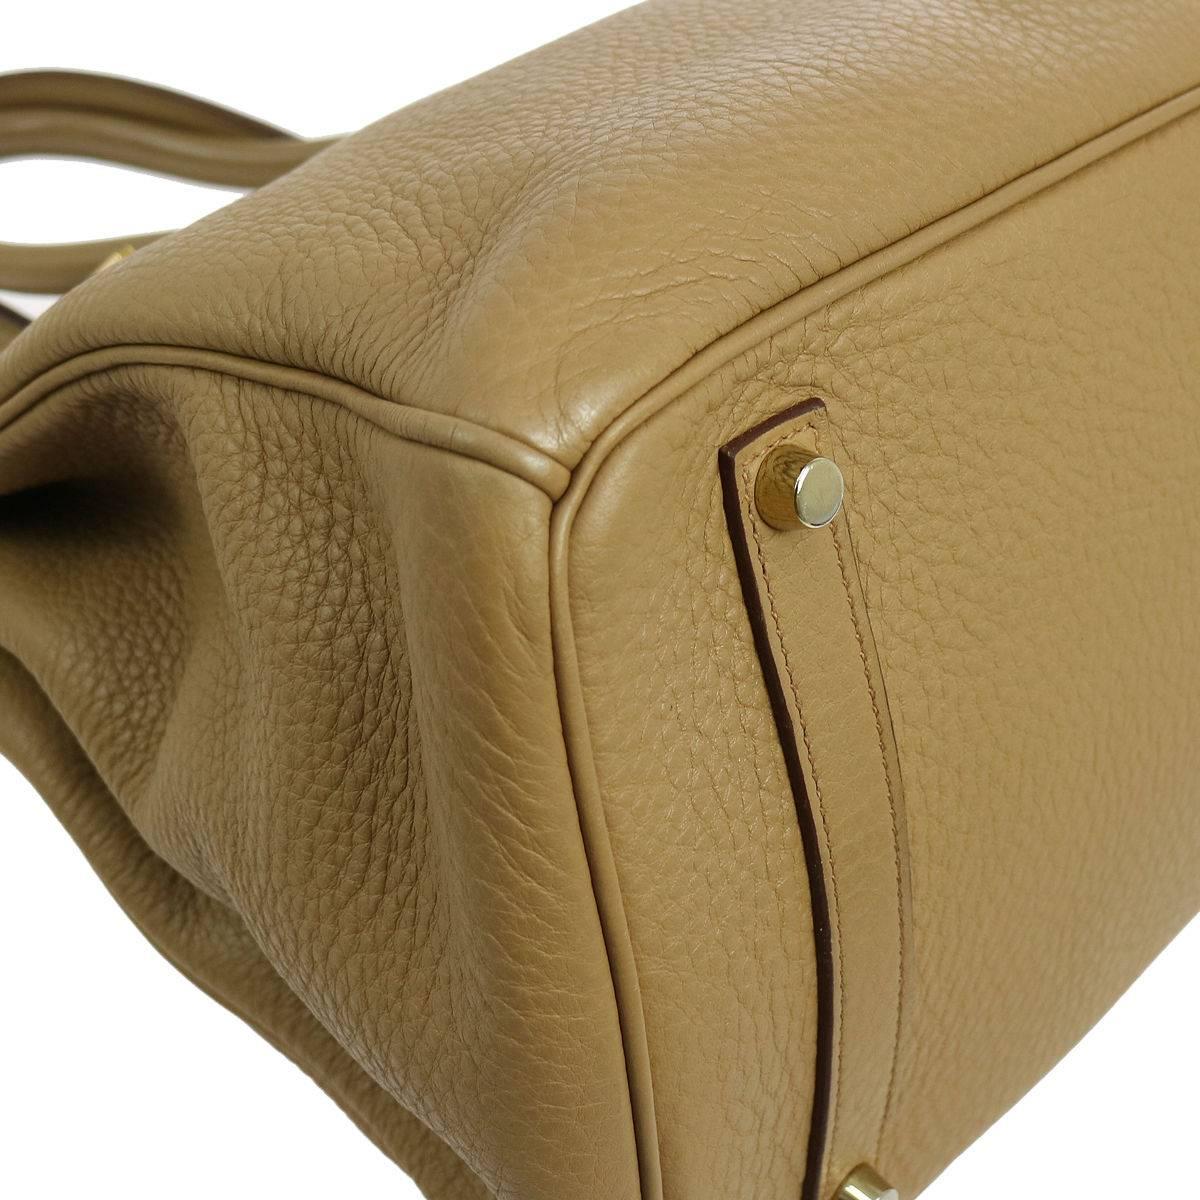 Brown Hermes Birkin 35 Taupe Gold CarryAll Satchel Tote Shoulder Bag